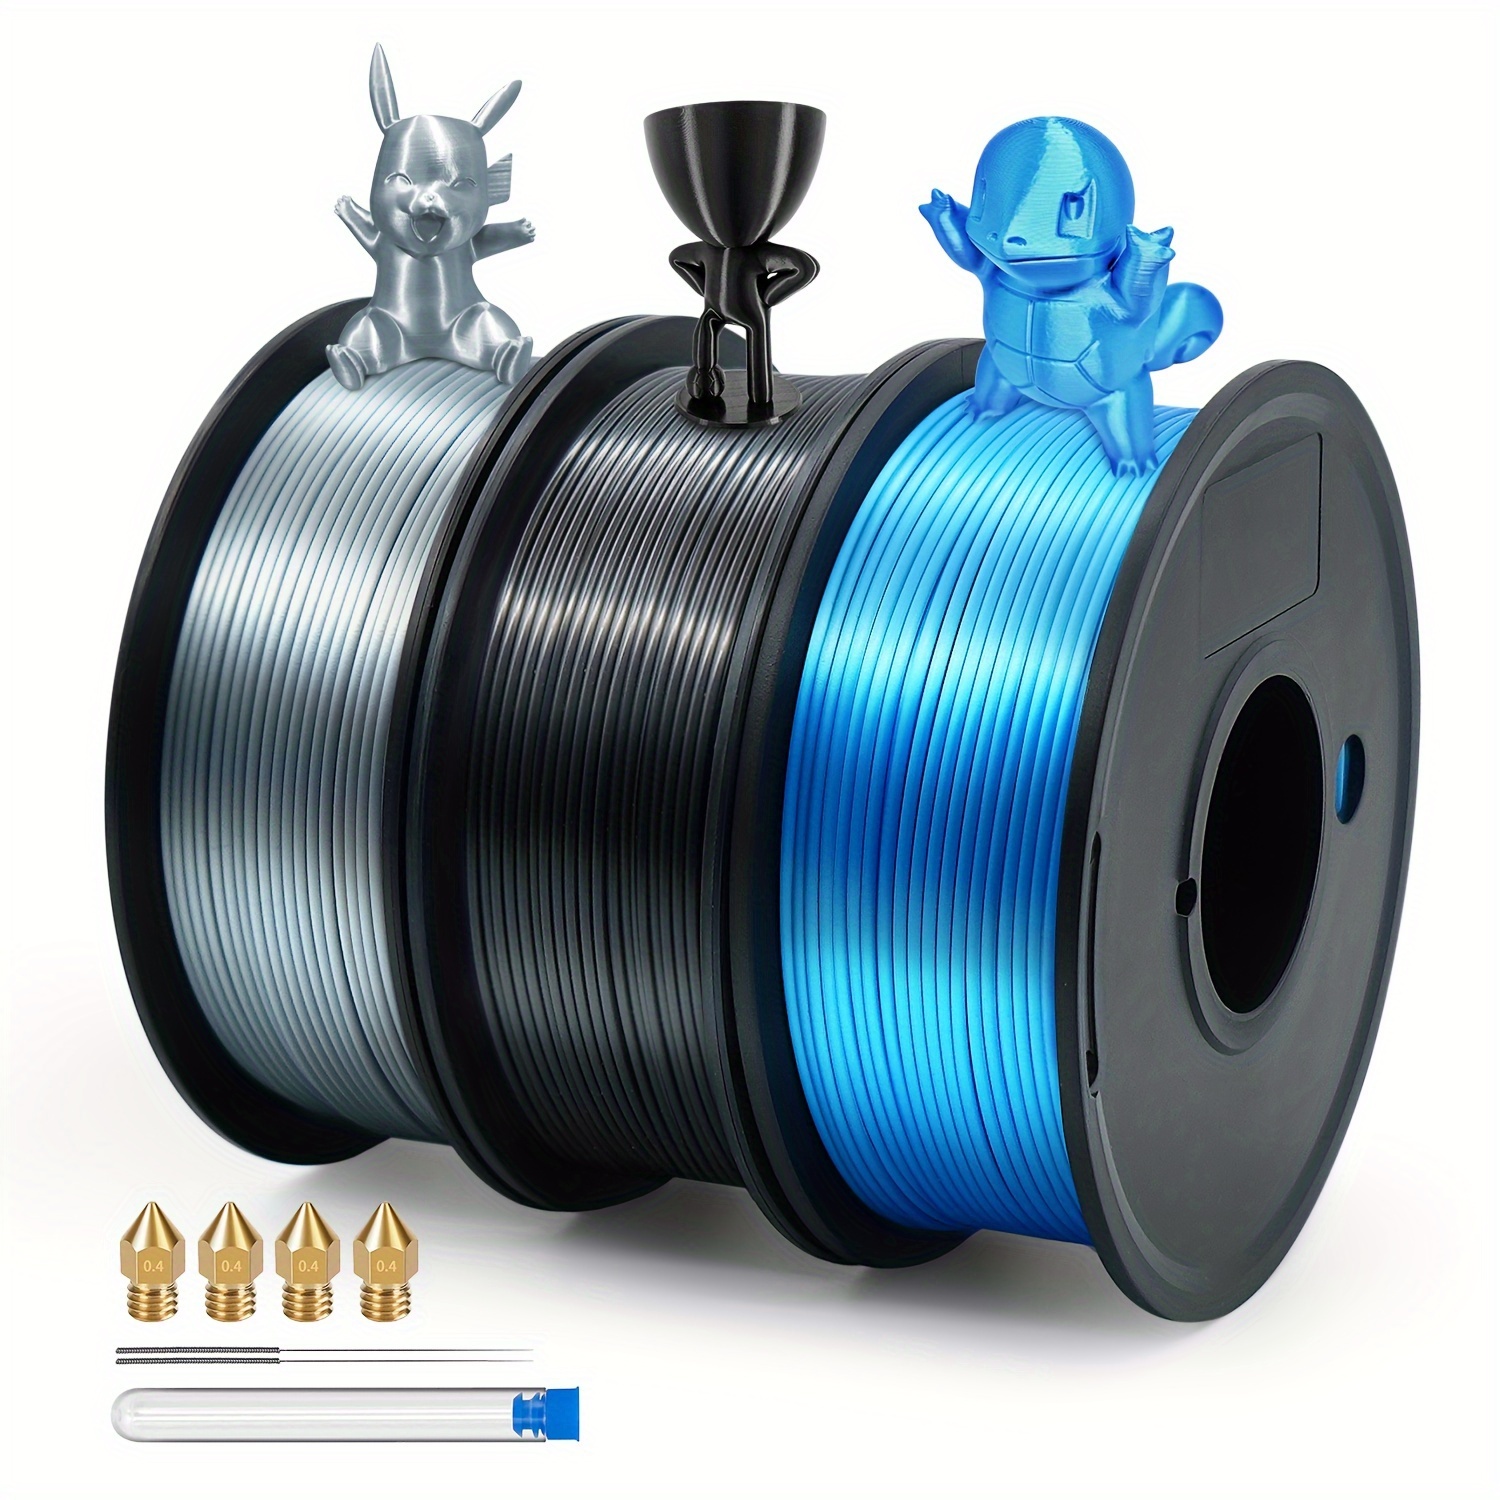 3D Printer Filament PLA Grey